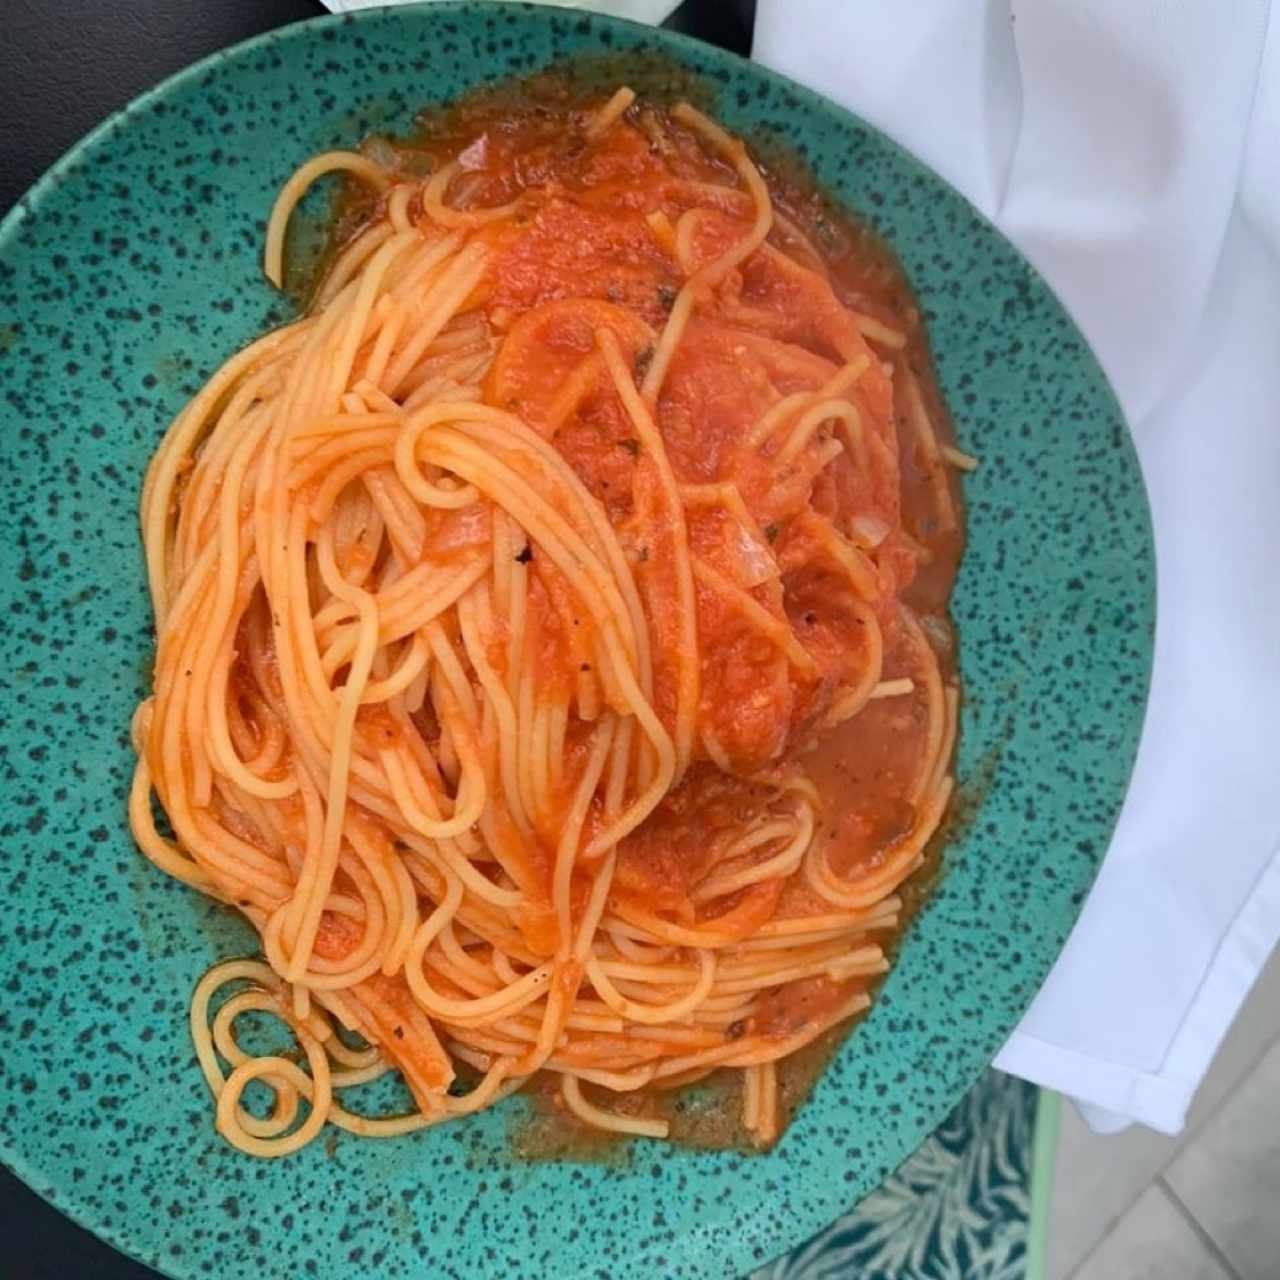 Spaghetti free gluten en salsa roja 